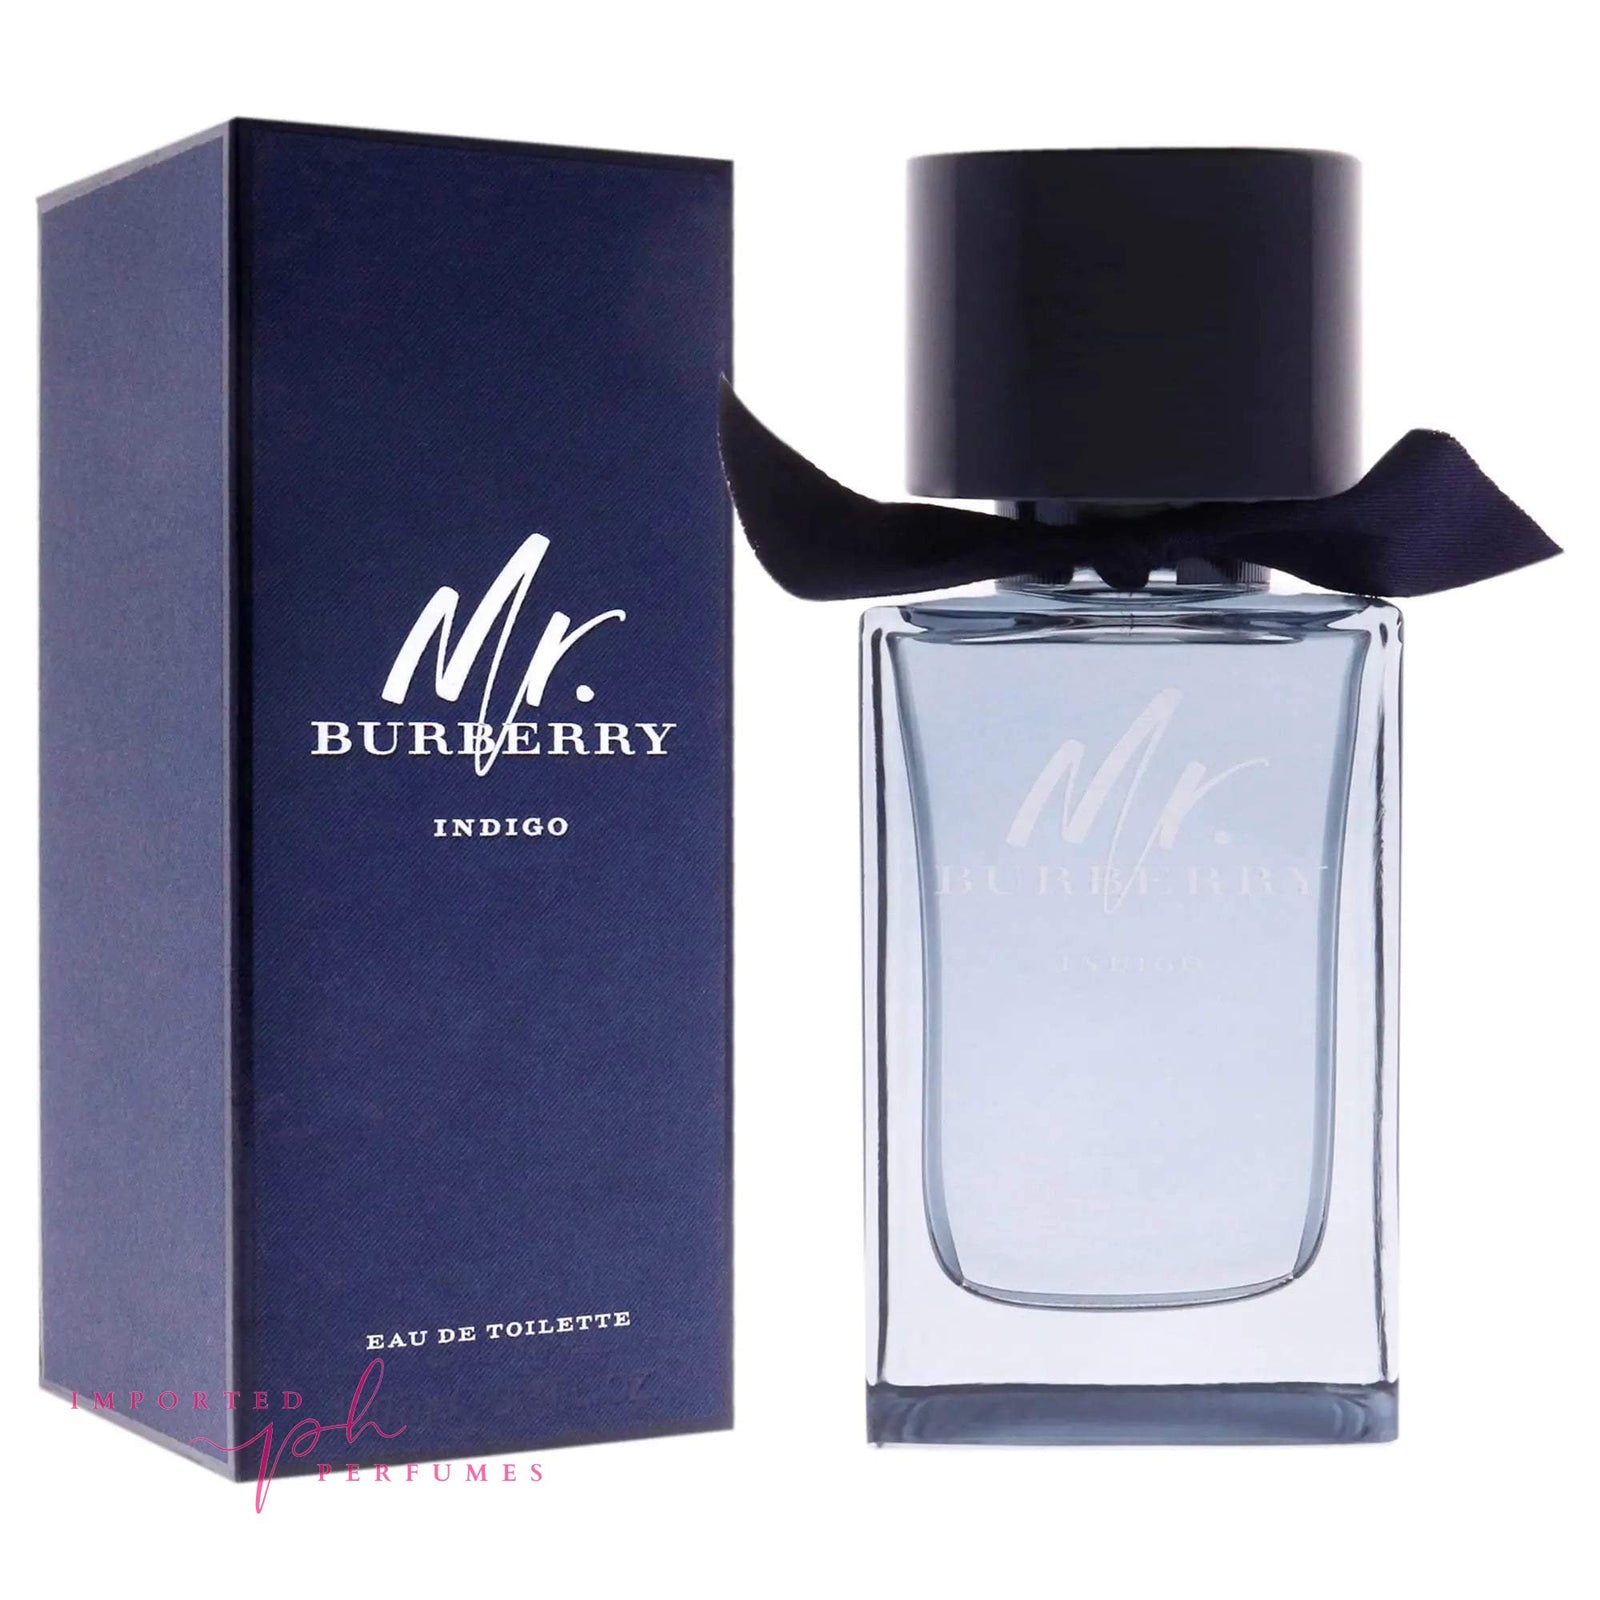 BURBERRY Mr. BURBERRY Eau de Parfum For Men 100ml-Imported Perfumes Co-burberry,burberry for men,burberry men,for men,men,men perfume